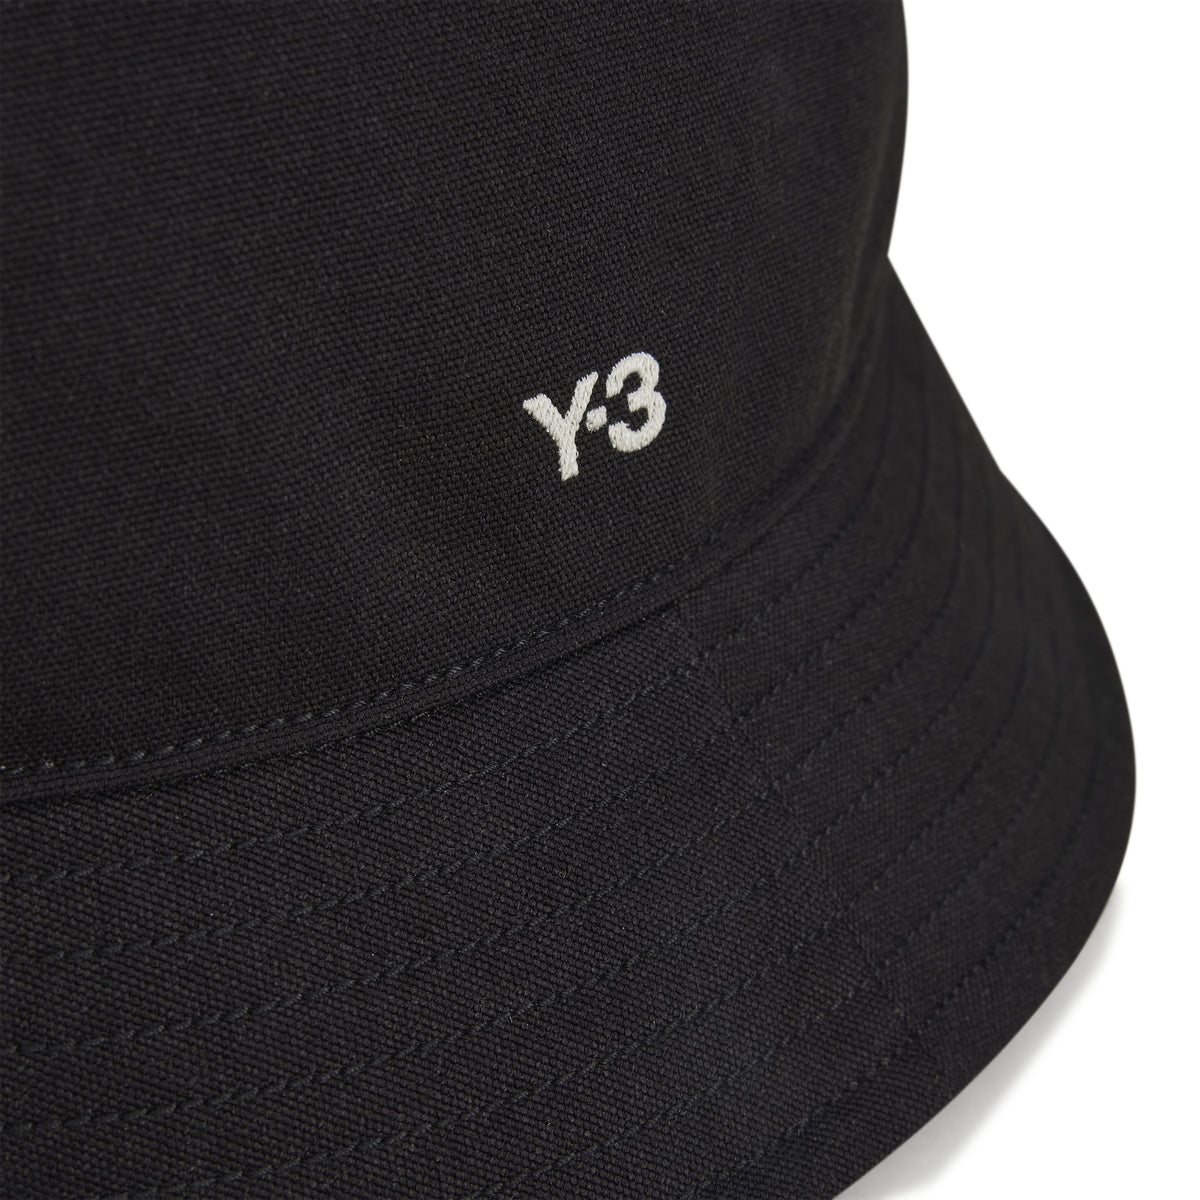 Y-3 Bucket Hat - Black